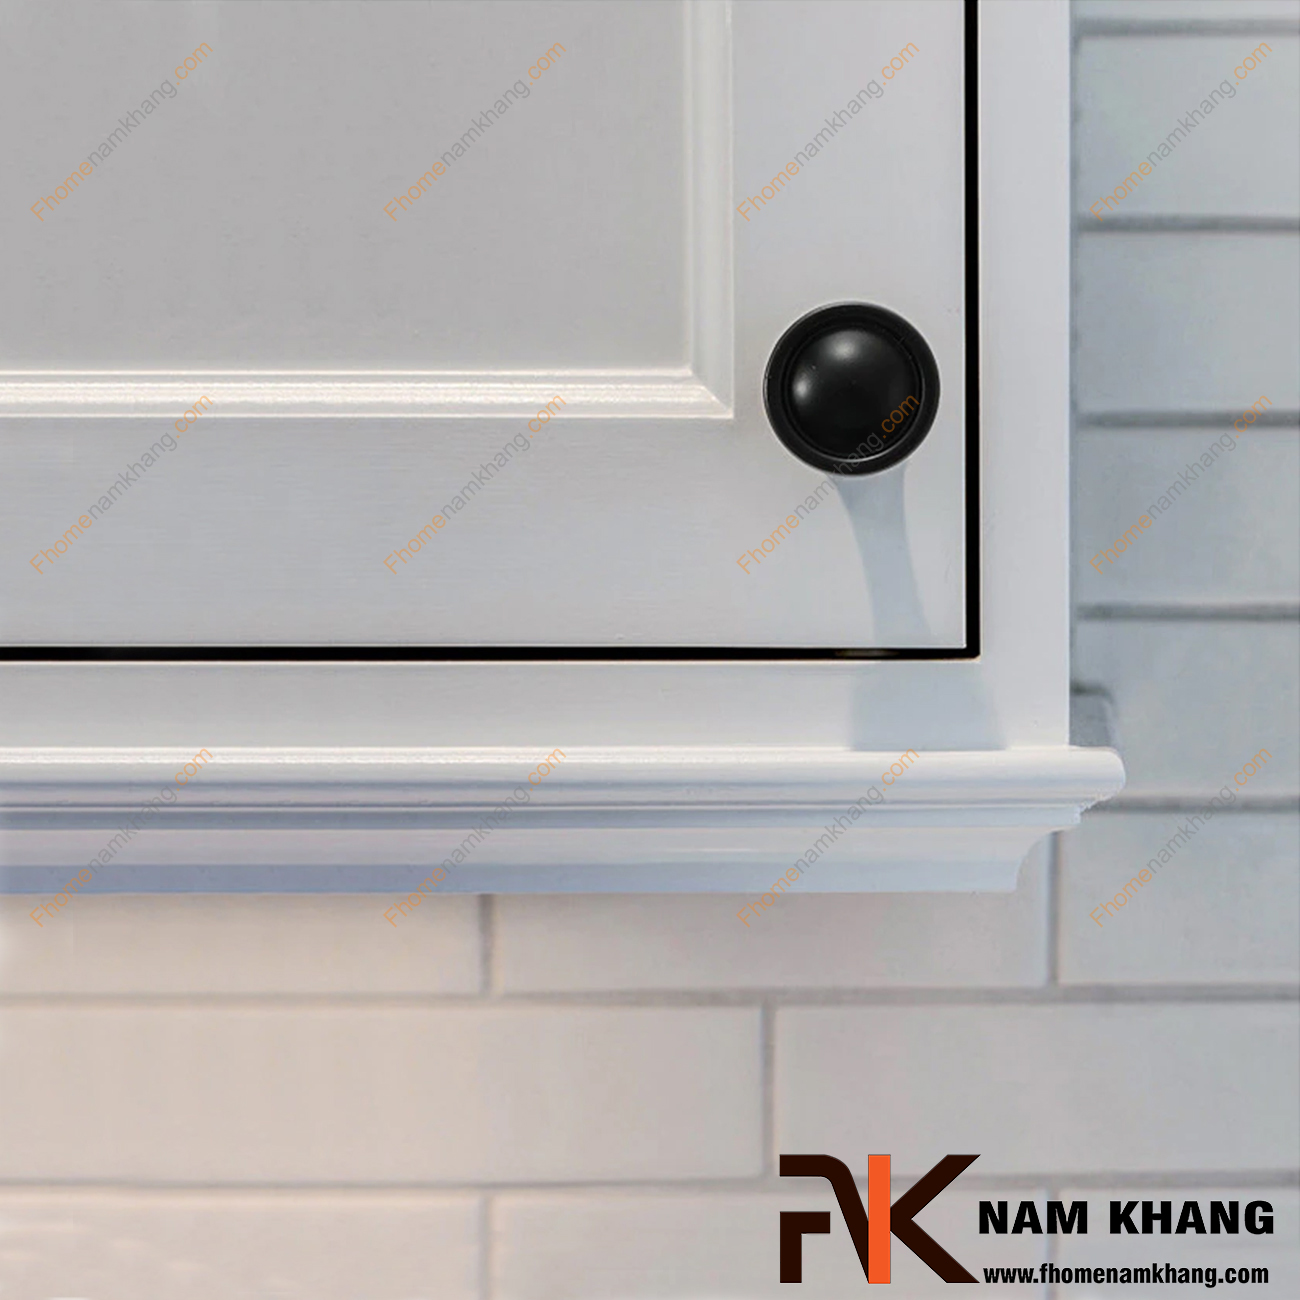 Núm cửa tủ dạng tròn màu đen NK227-D được sử dụng nhiều trên nhiều phong cách tủ kệ khác nhau. Sản phẩm được tin dùng trên các loại tủ kệ trưng bày, tủ quần áo, tủ phong thủy , ngăn kệ bàn làm việc